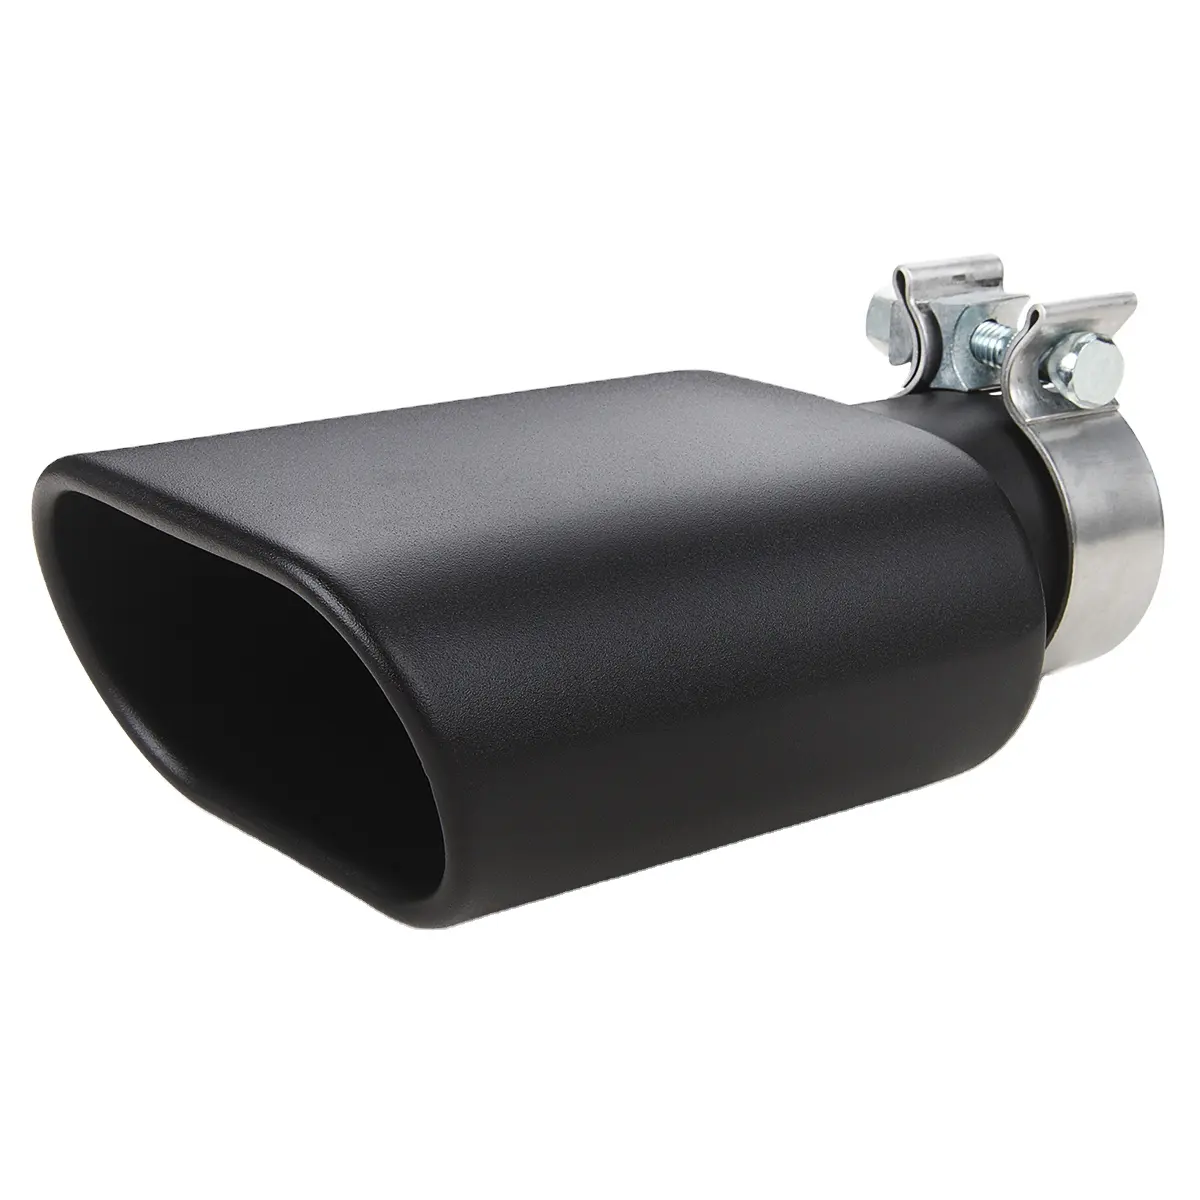 Tubos de escape de coche al por mayor, diseño de abrazadera mejorada de sonido, acero 304, color negro, tubo de ventilación plano Universal